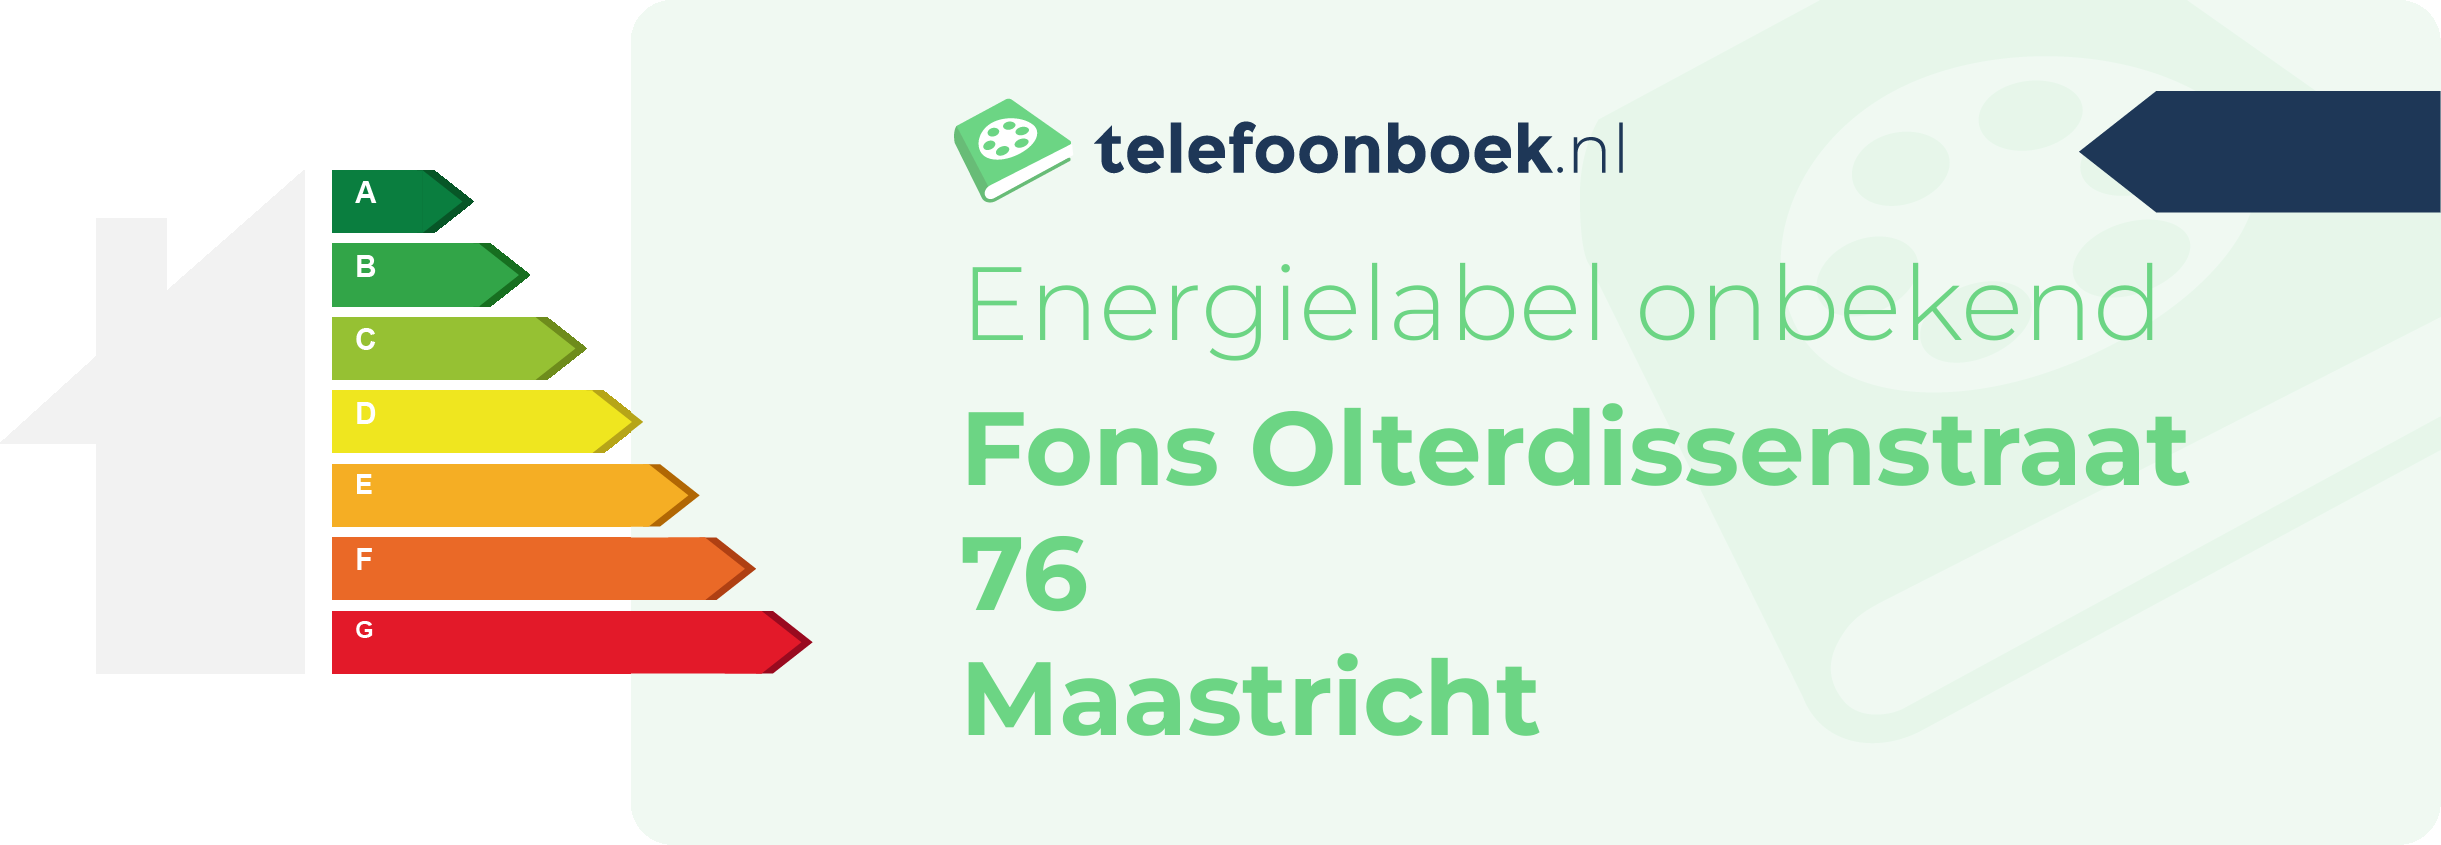 Energielabel Fons Olterdissenstraat 76 Maastricht